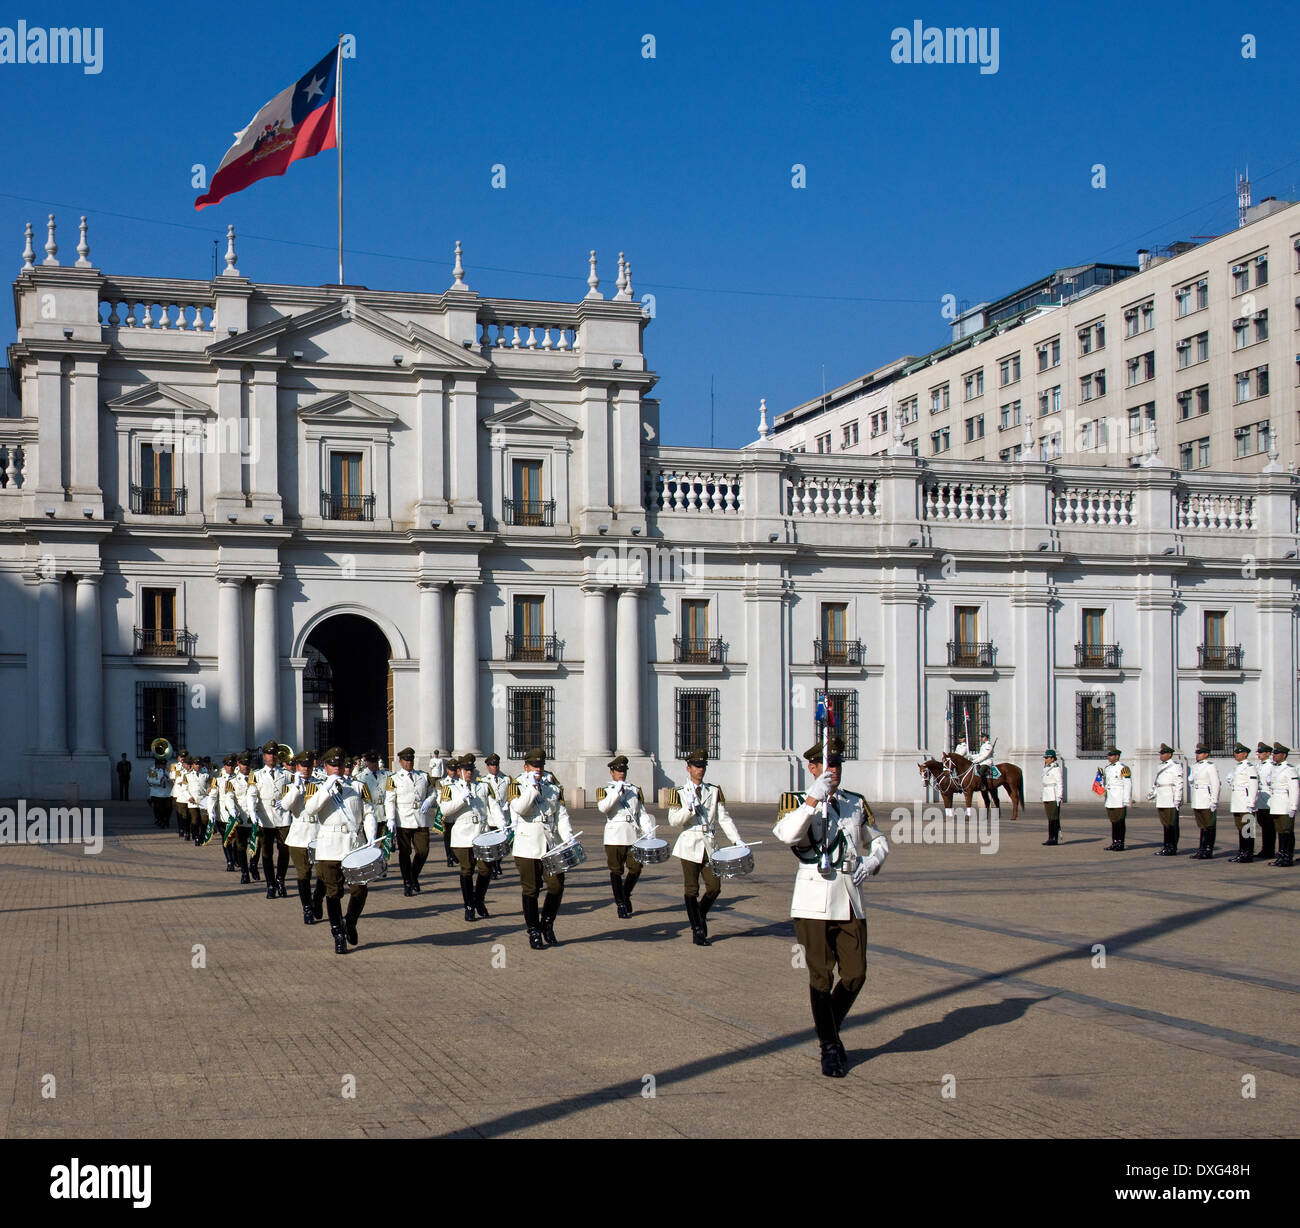 Relève de la garde au Palais présidentiel de la ville de Santiago au Chili - Amérique du Sud Banque D'Images